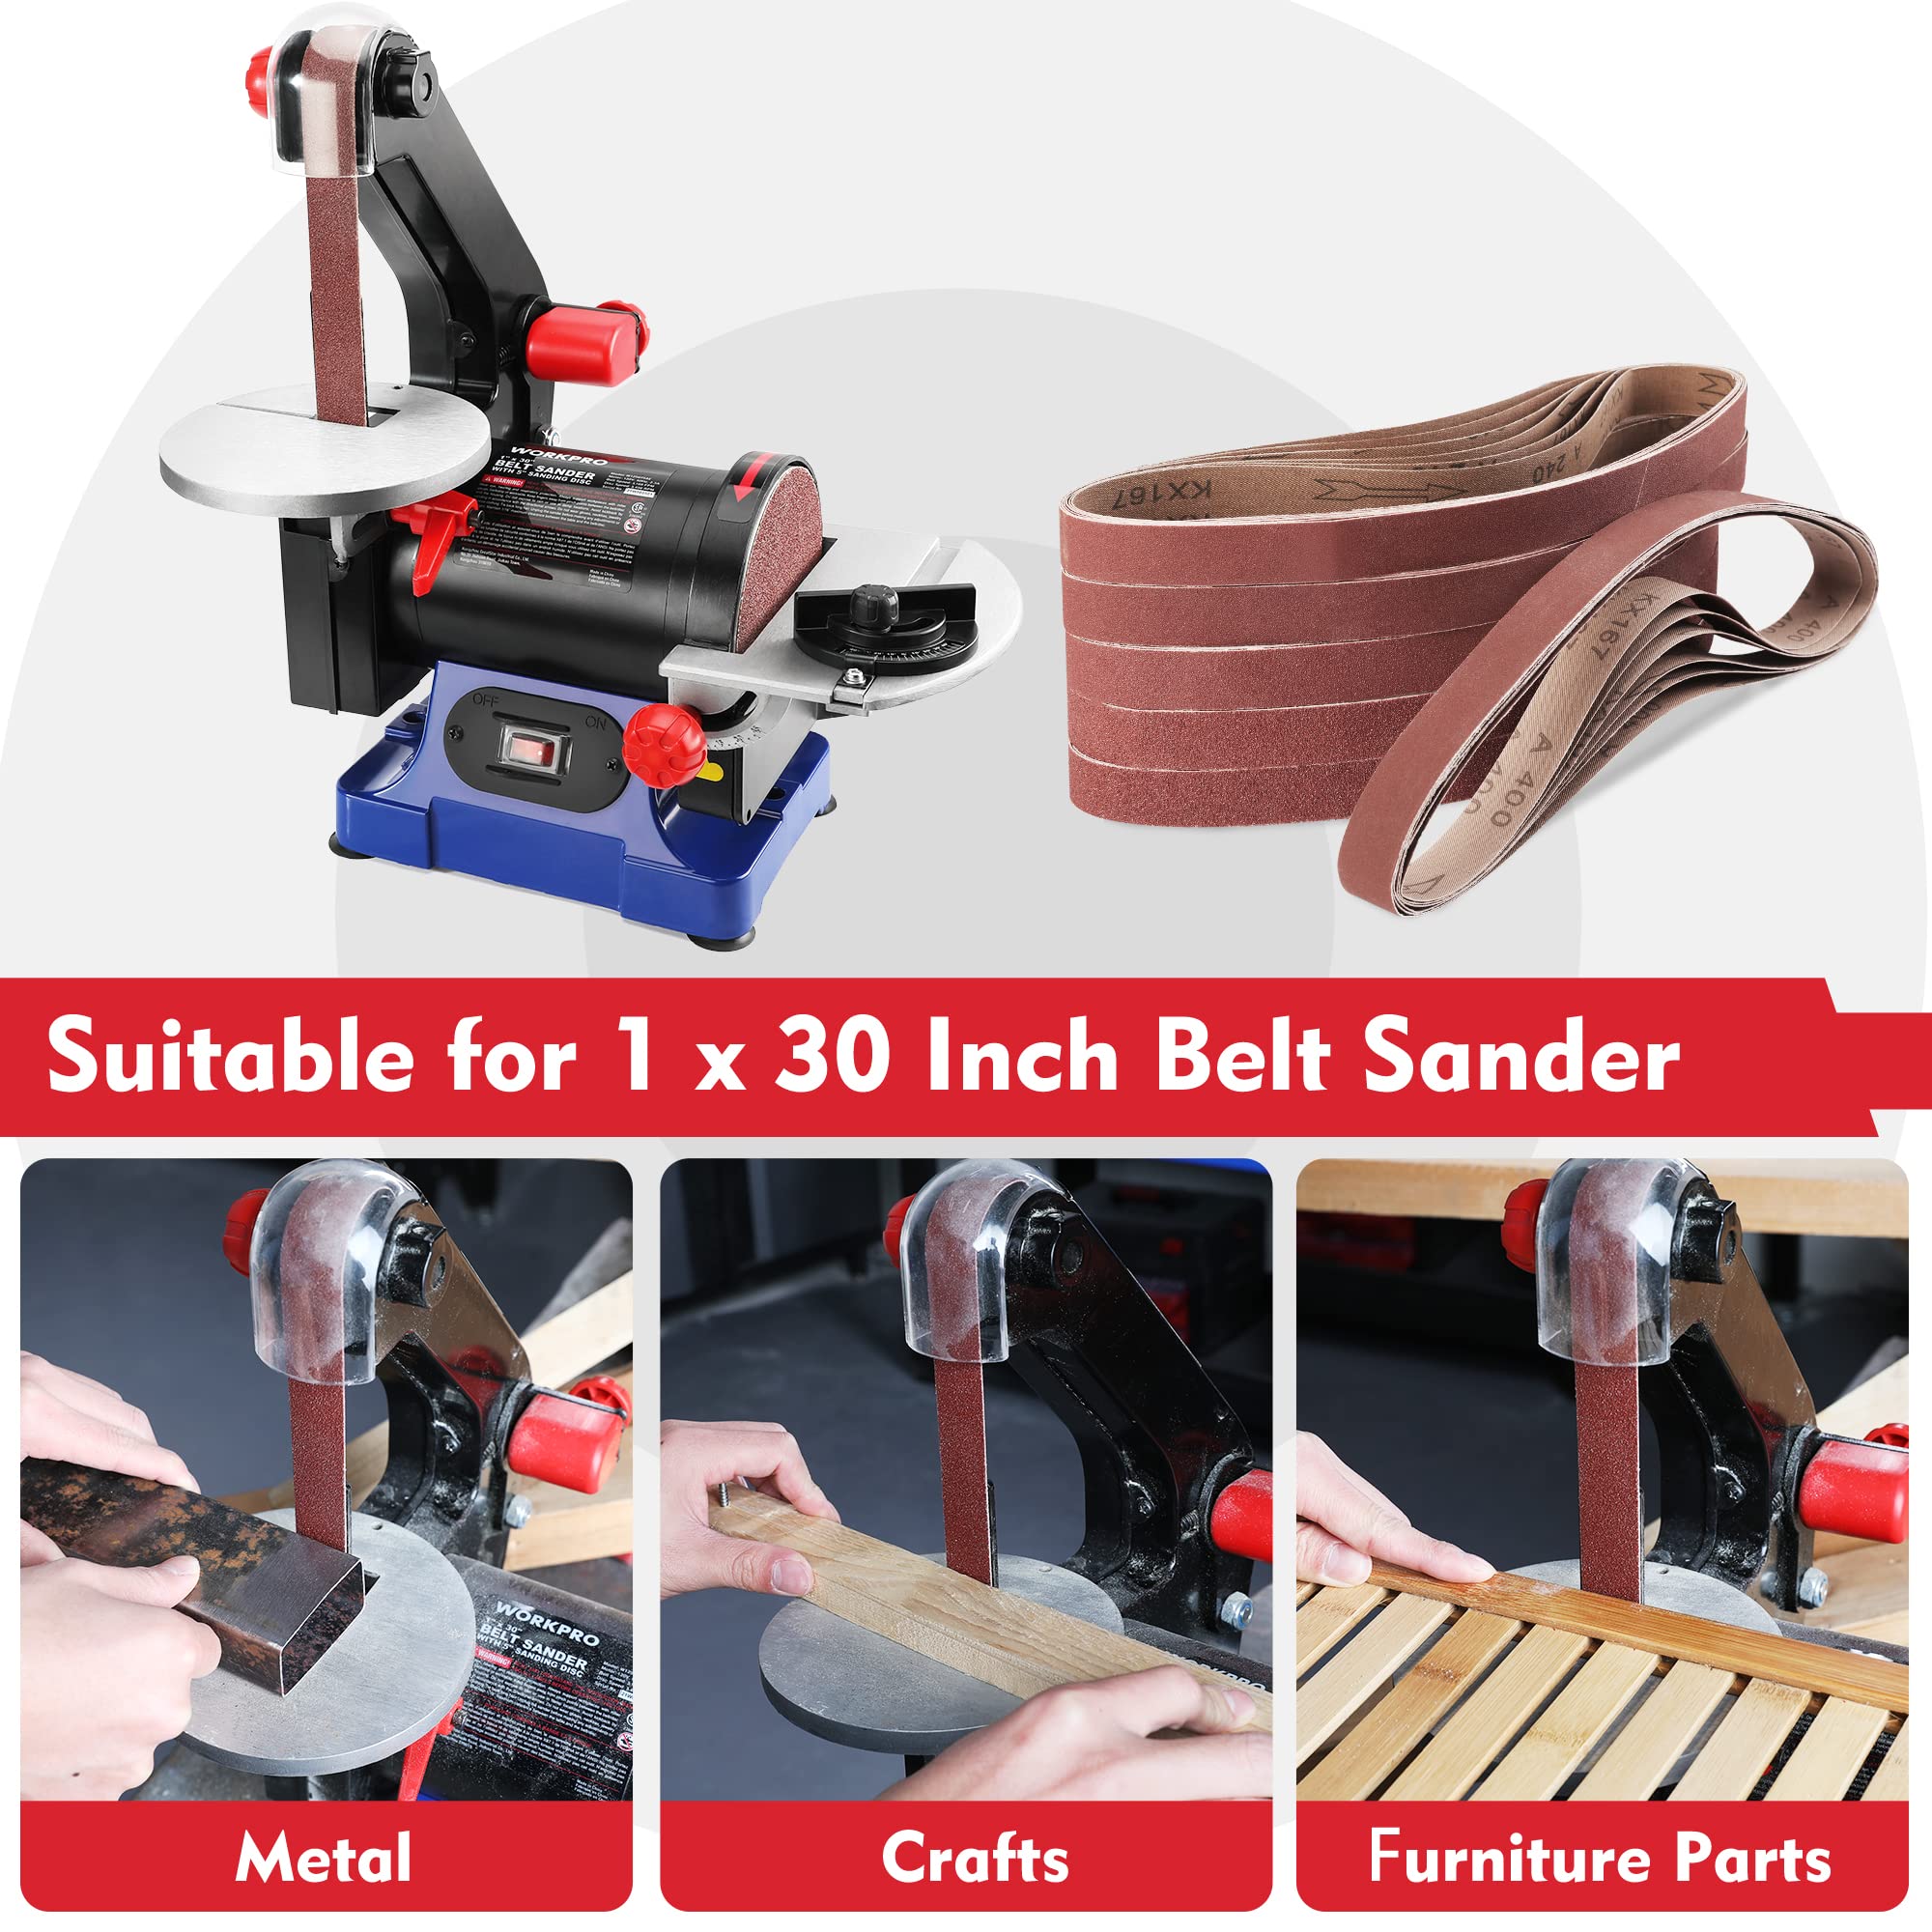 WORKPRO 36 Pack 1 x 30 Inch Sanding Belts, Sandpaper Kit, Aluminum Oxide Abrasive Belts, 6 PCS Each of 60/80/120/180/240/400 Grit, Belt Sander Tools for Woodworking, Metal Polishing, Knife Sharpening